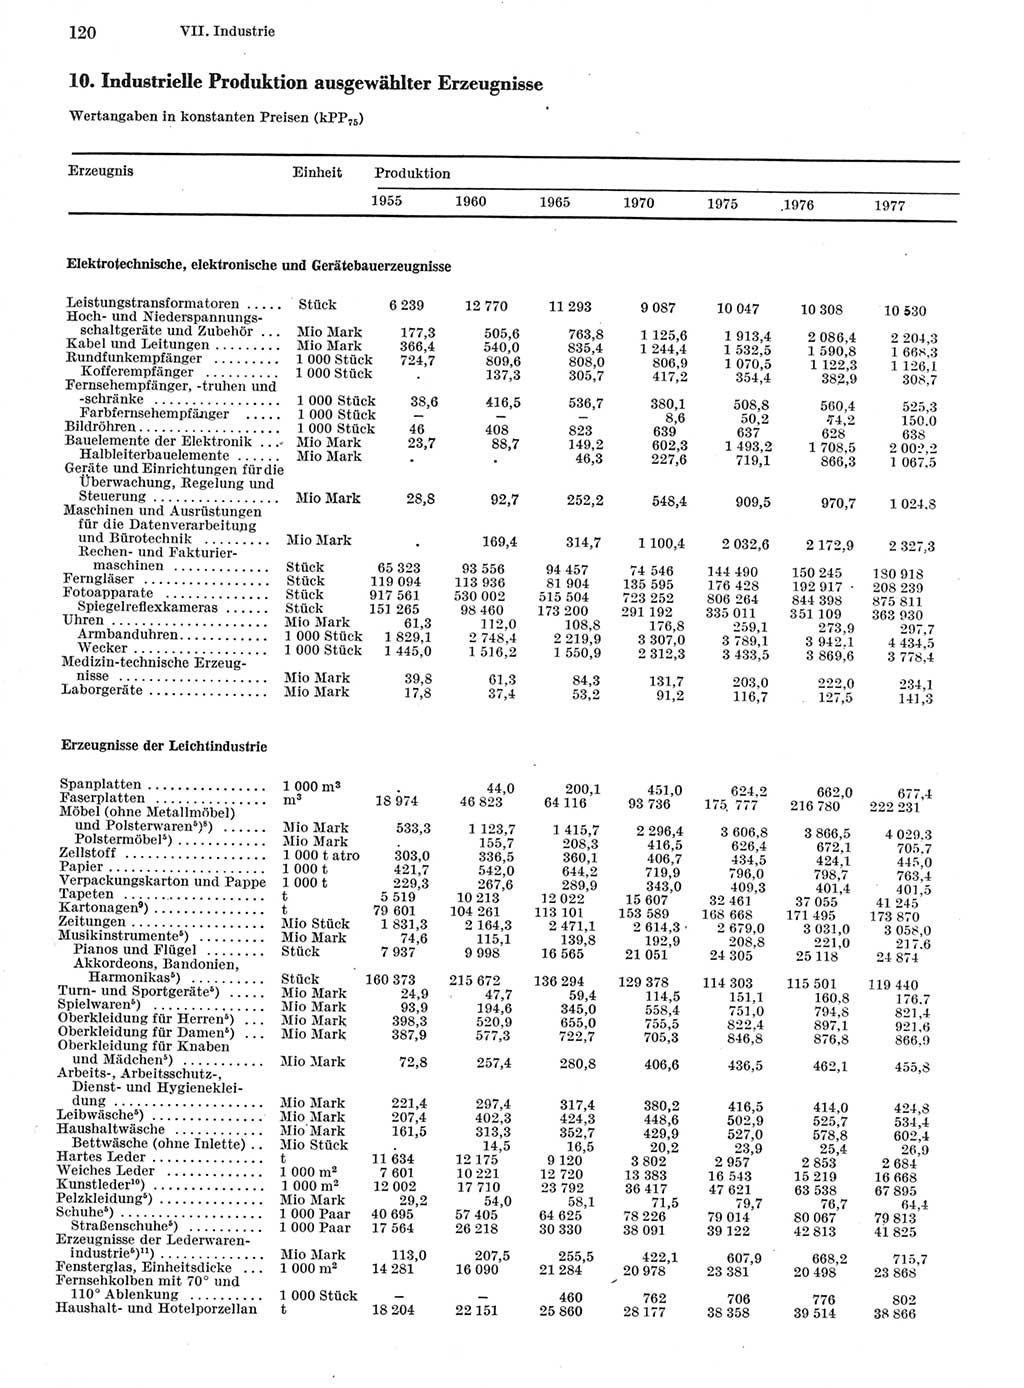 Statistisches Jahrbuch der Deutschen Demokratischen Republik (DDR) 1978, Seite 120 (Stat. Jb. DDR 1978, S. 120)